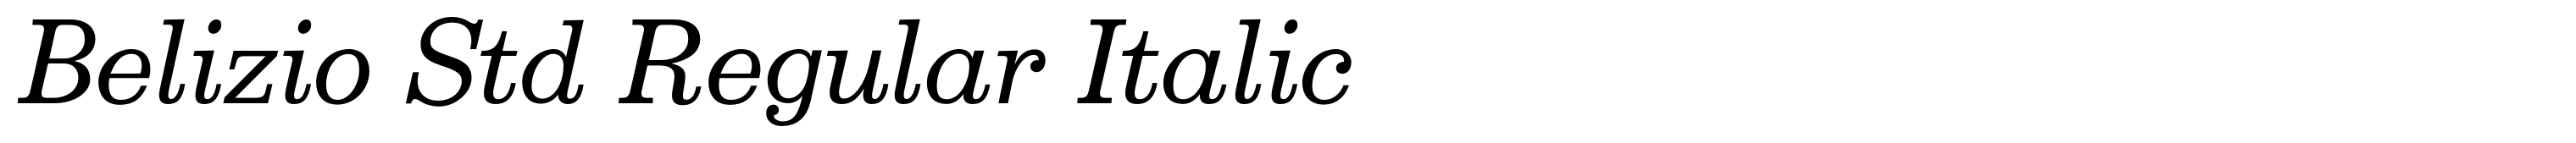 Belizio Std Regular Italic